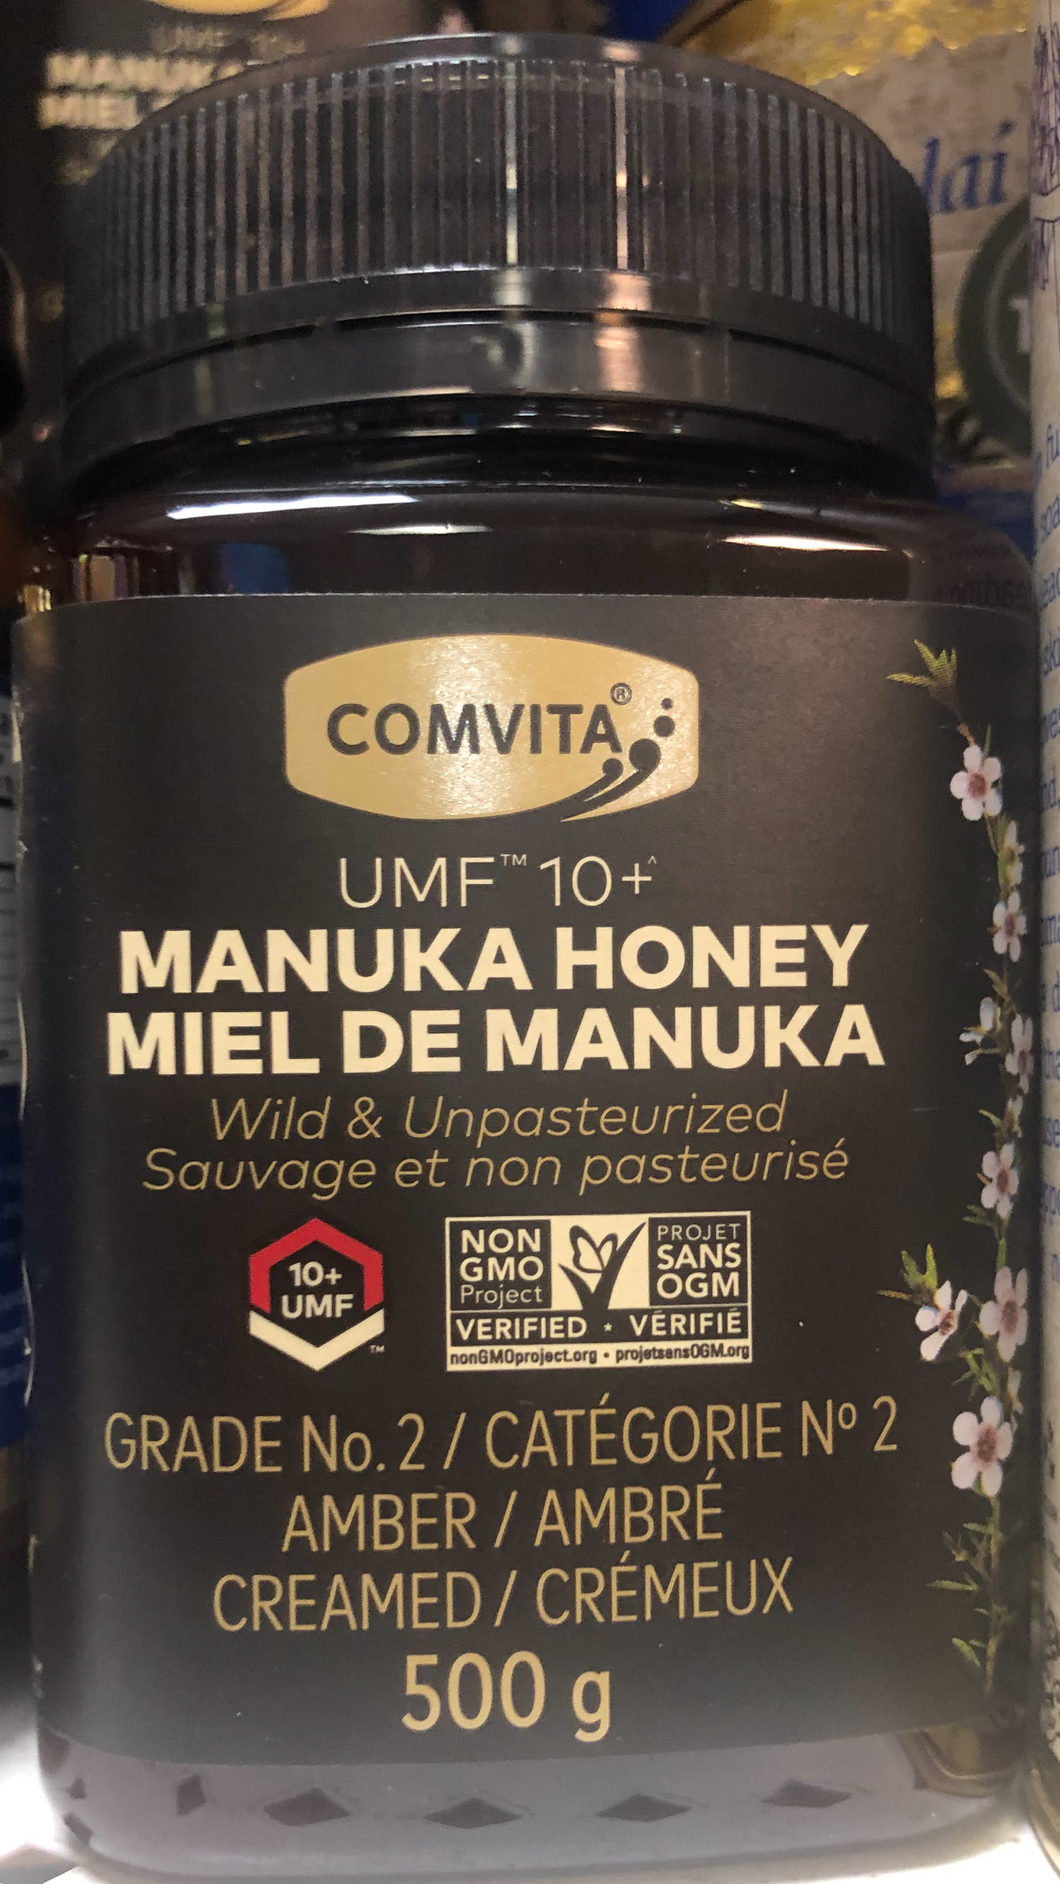 Wild Unpasteurized Manuka Honey